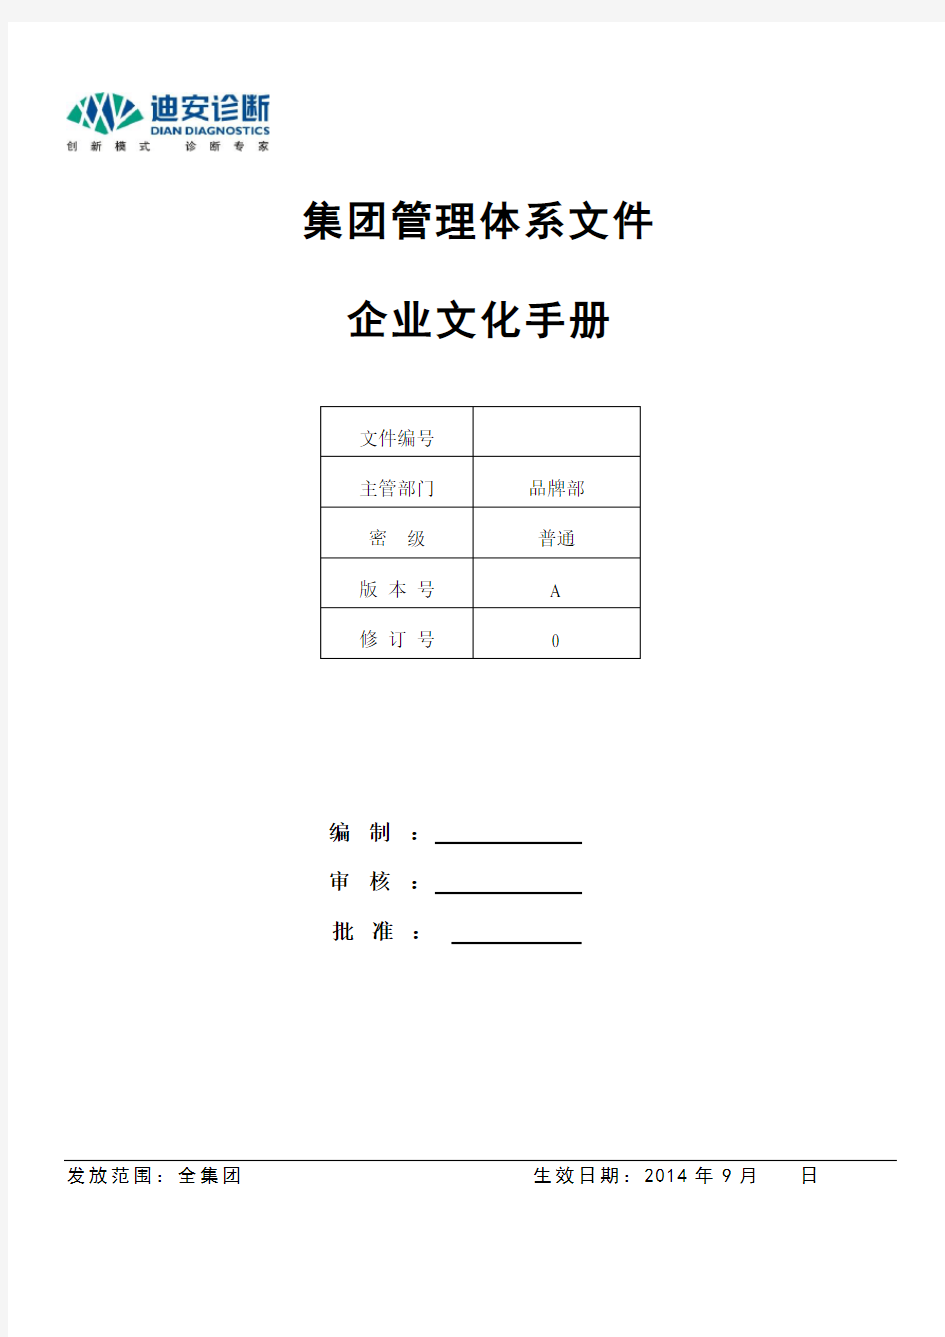 企业文化手册初稿9.19--From 柳丹玲(20140924修改